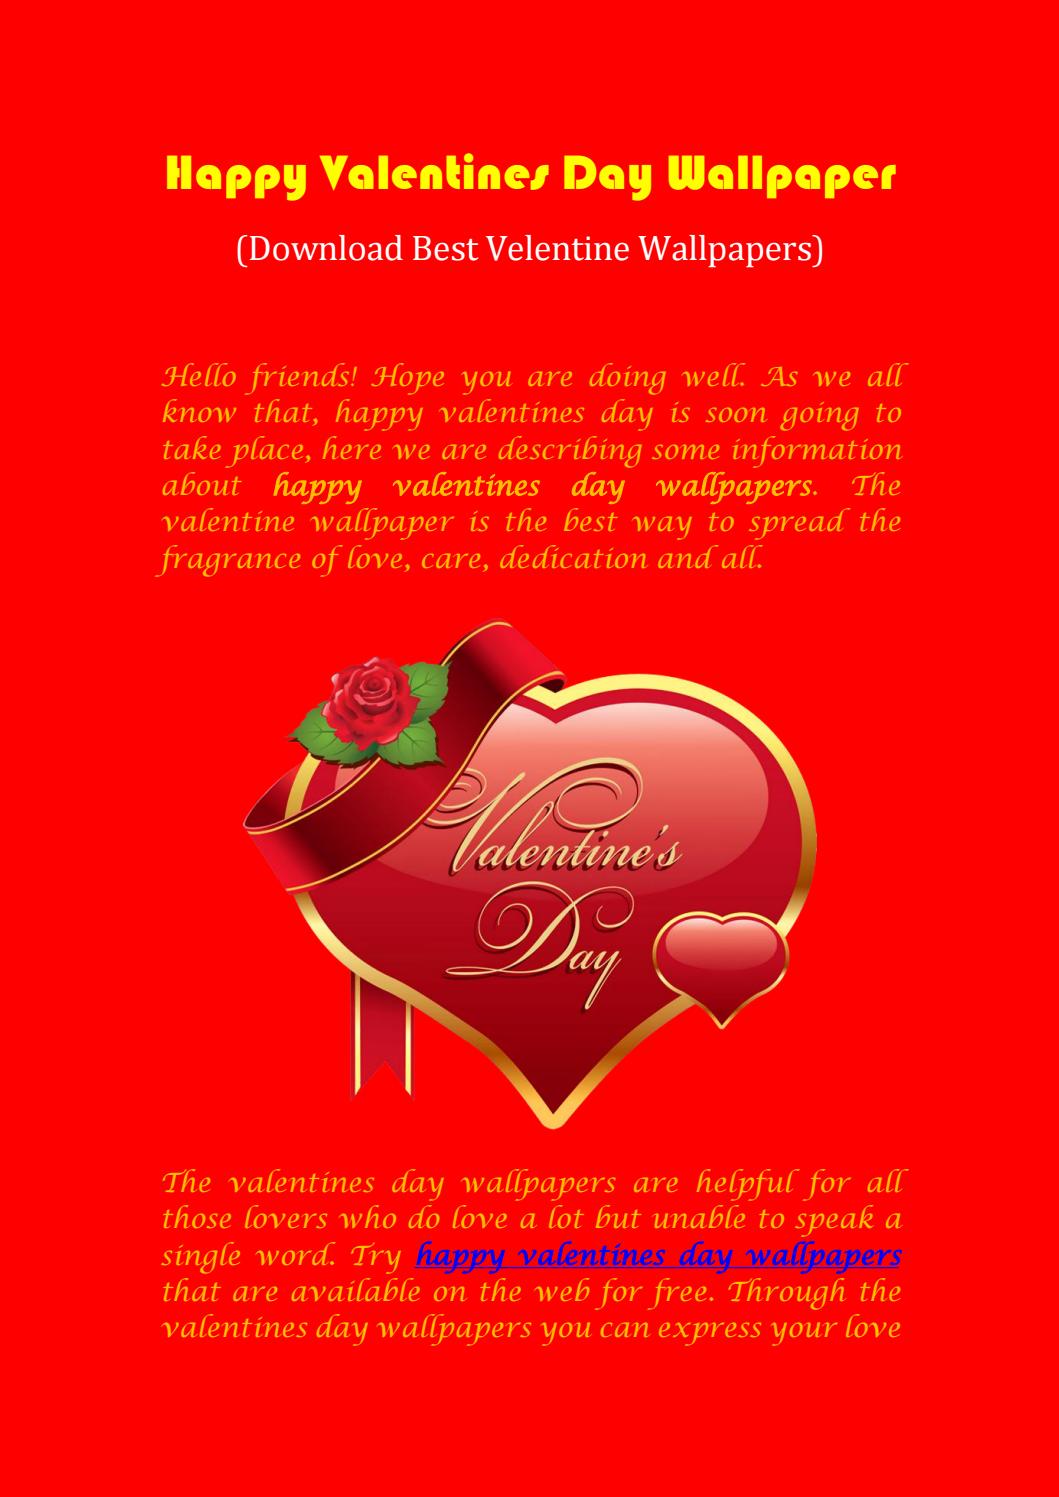 papel tapiz de san valentín,texto,día de san valentín,corazón,ilustración,póster